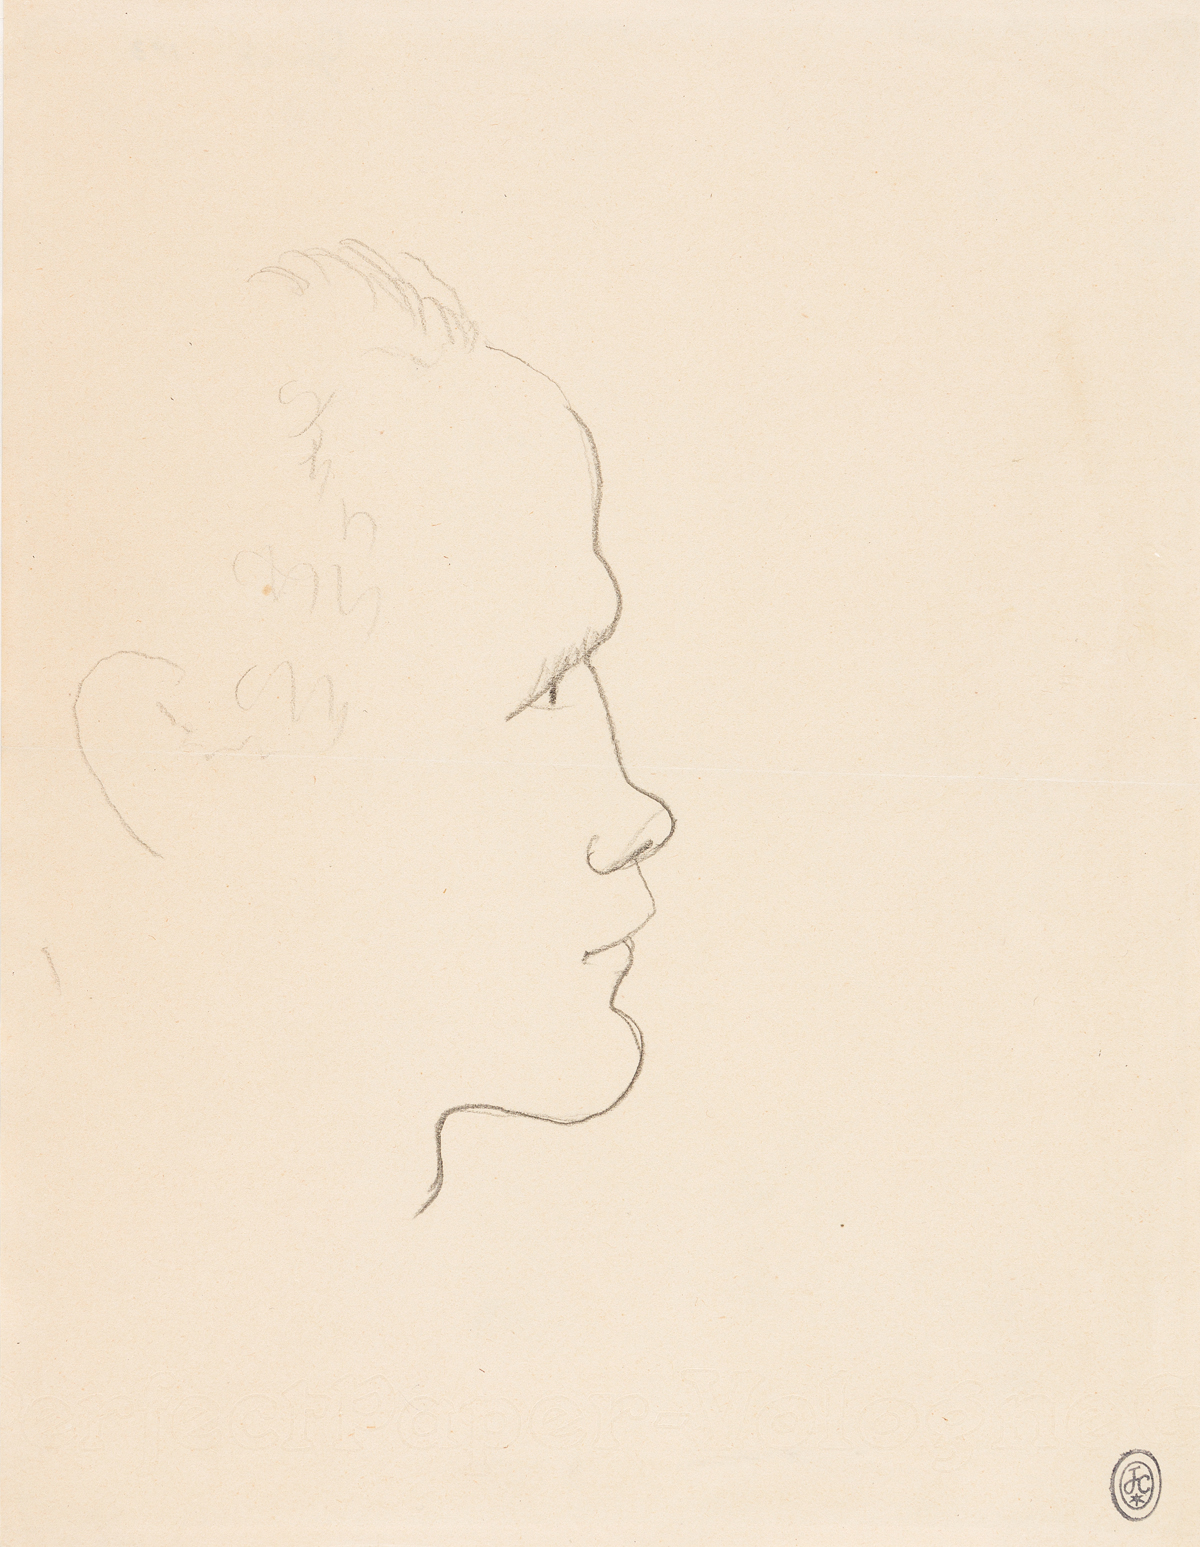 JEAN COCTEAU (1889-1963) Jean Genet * Marcel Khill * Jean Desbordes.